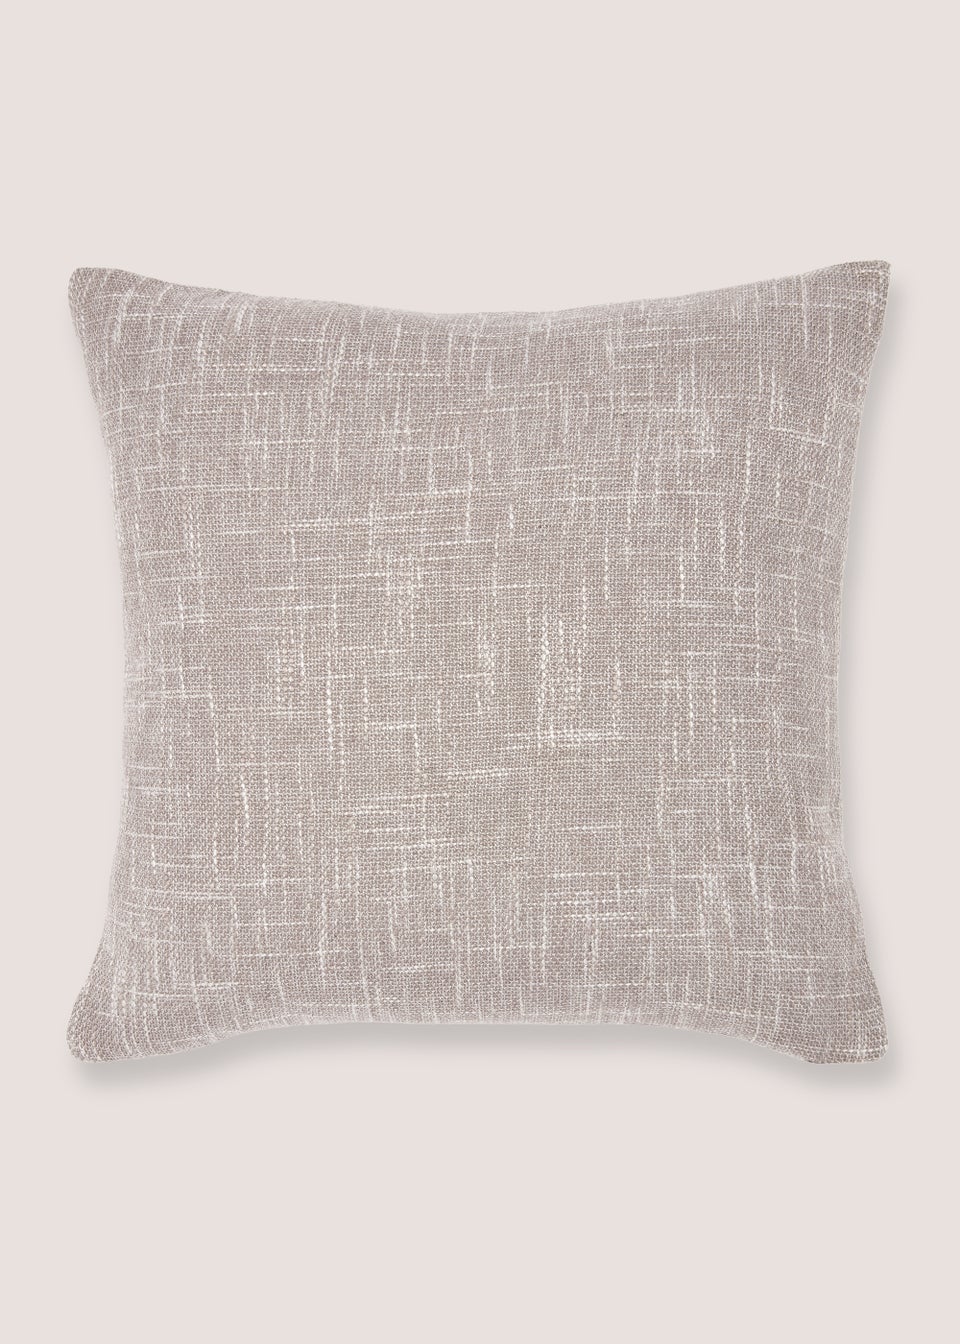 Grey Marl Textured Cushion (43cm x 43cm)